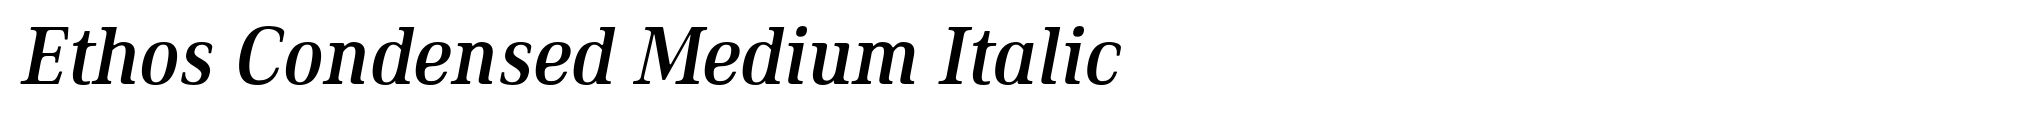 Ethos Condensed Medium Italic image